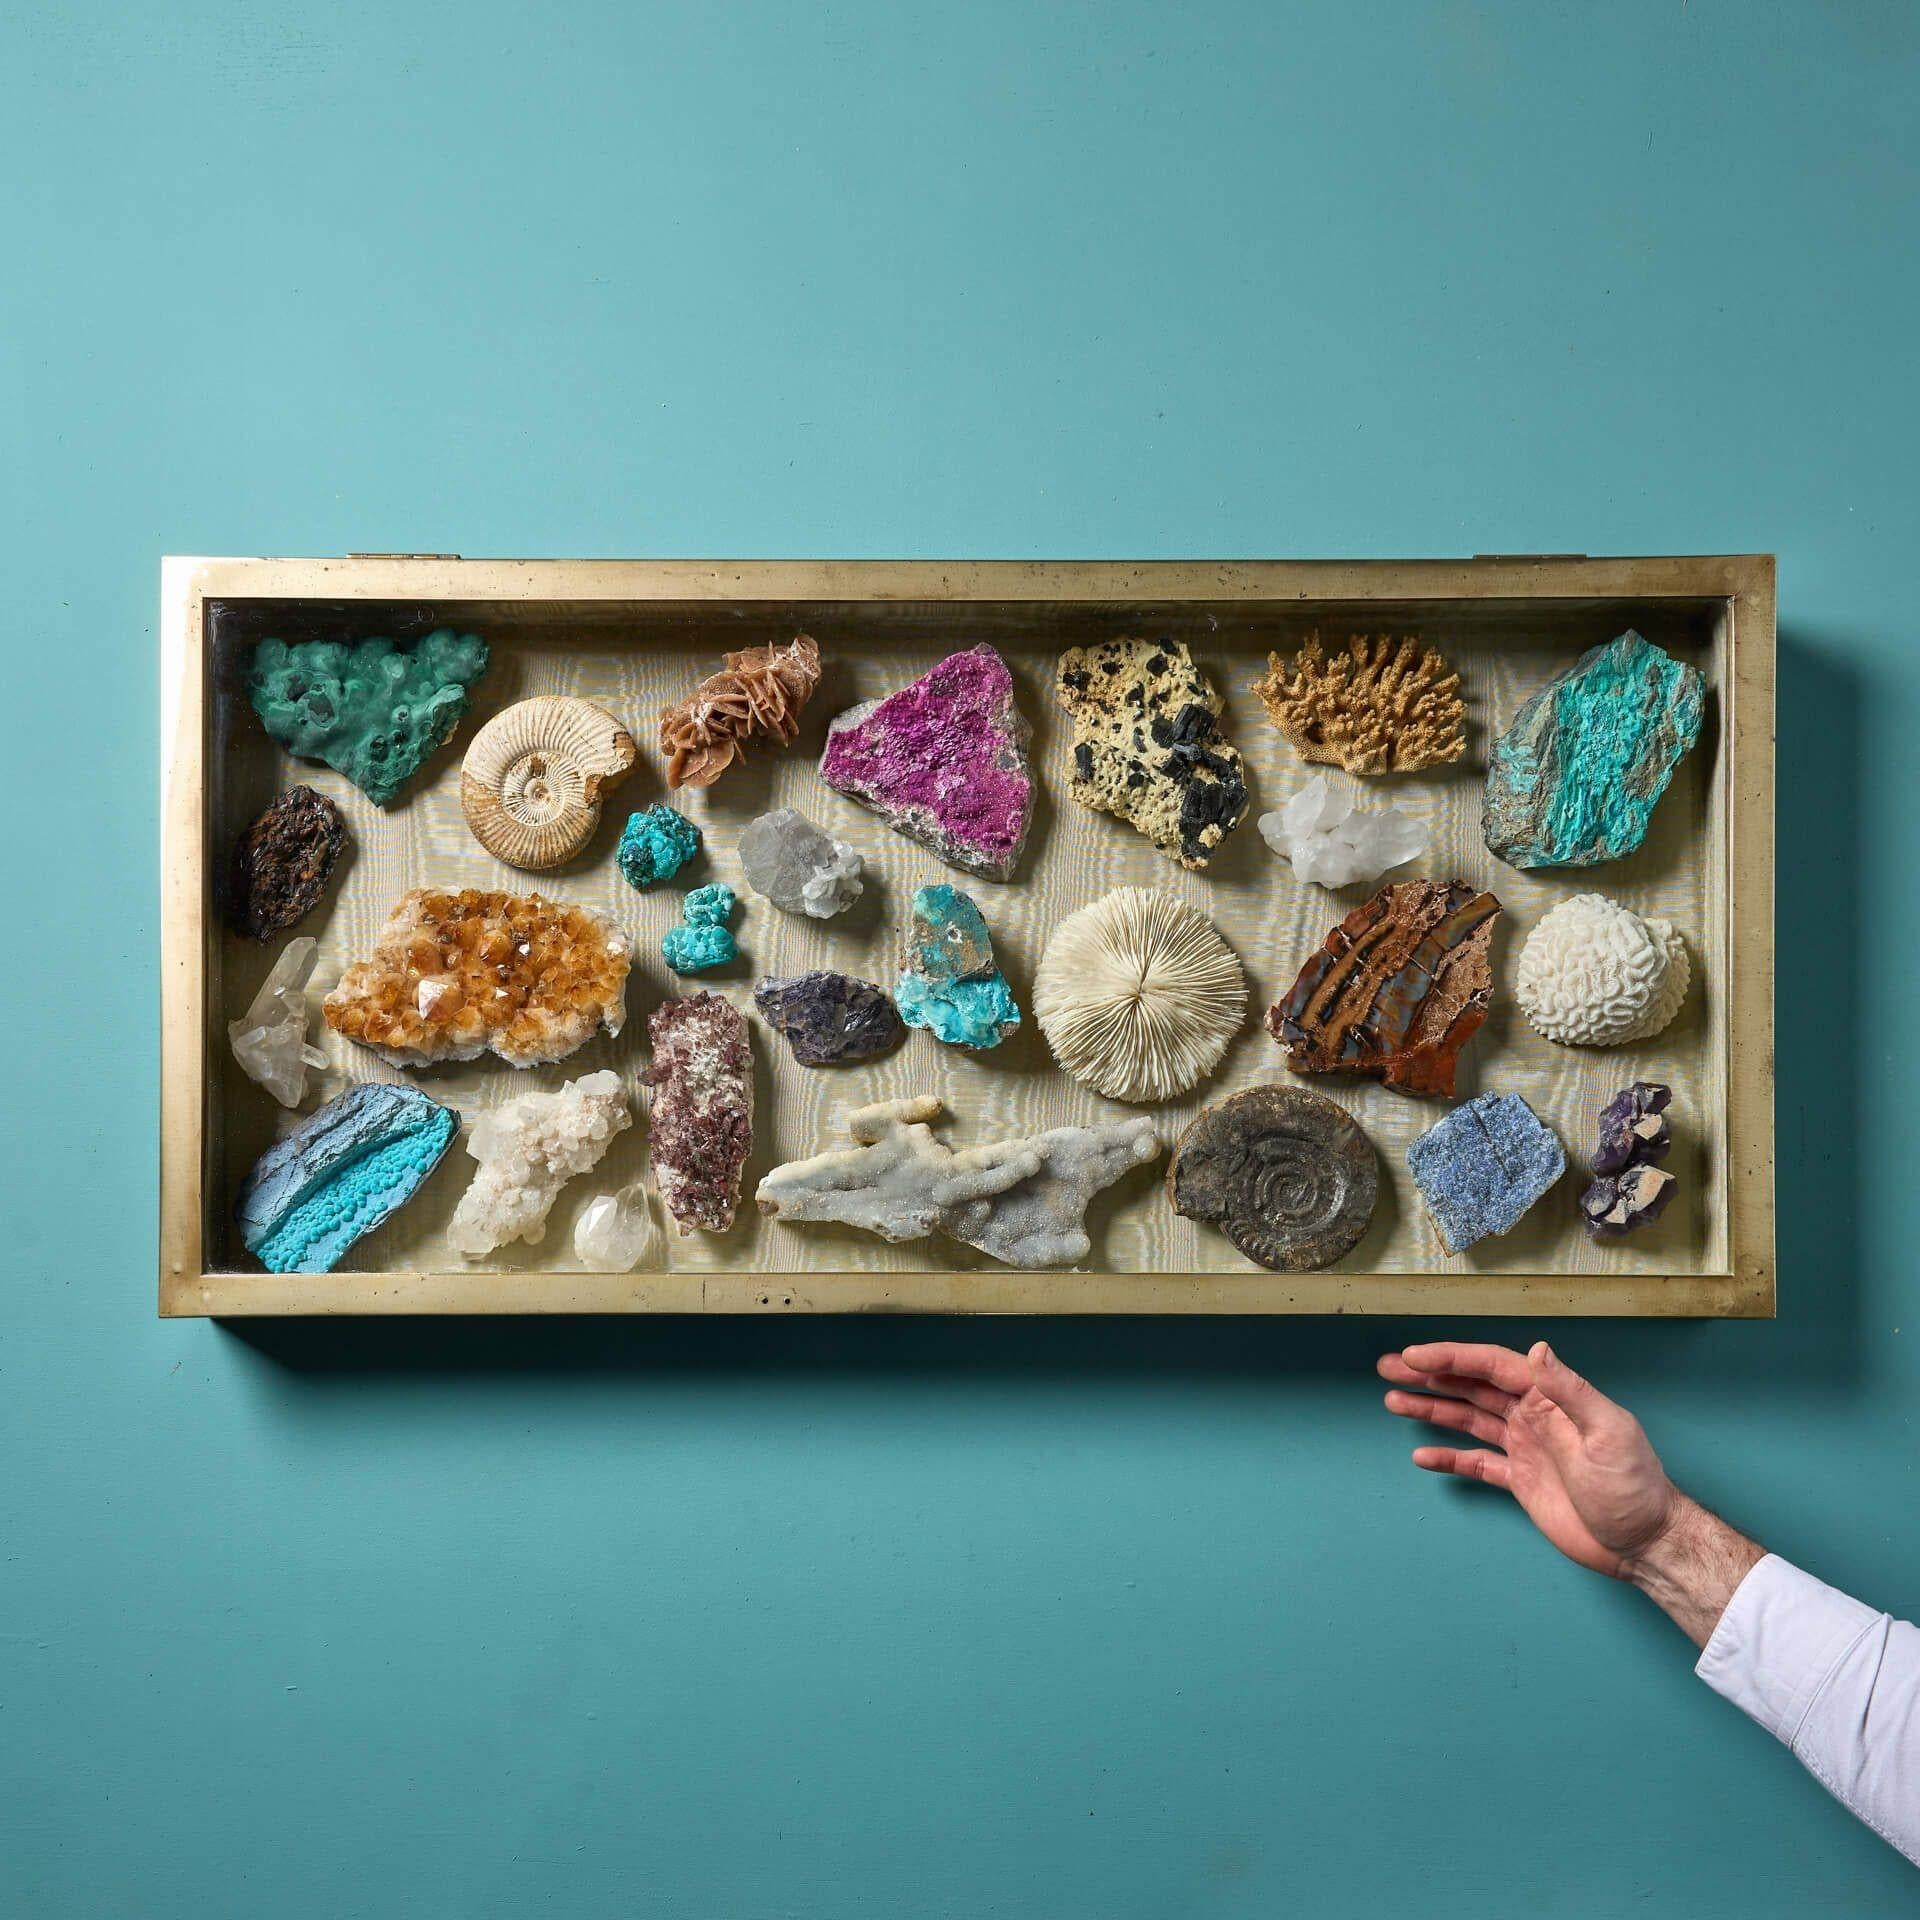 Eine Collection'S von naturkundlichen Exemplaren in einer antiken Glasvitrine. Mit 27 exquisiten Fossilien und Mineralien ist dies ein wahres Kuriositätenkabinett, darunter drei Korallen, zwei Ammoniten, Wüstenrose, Citrin, Kalzit, Malachit,